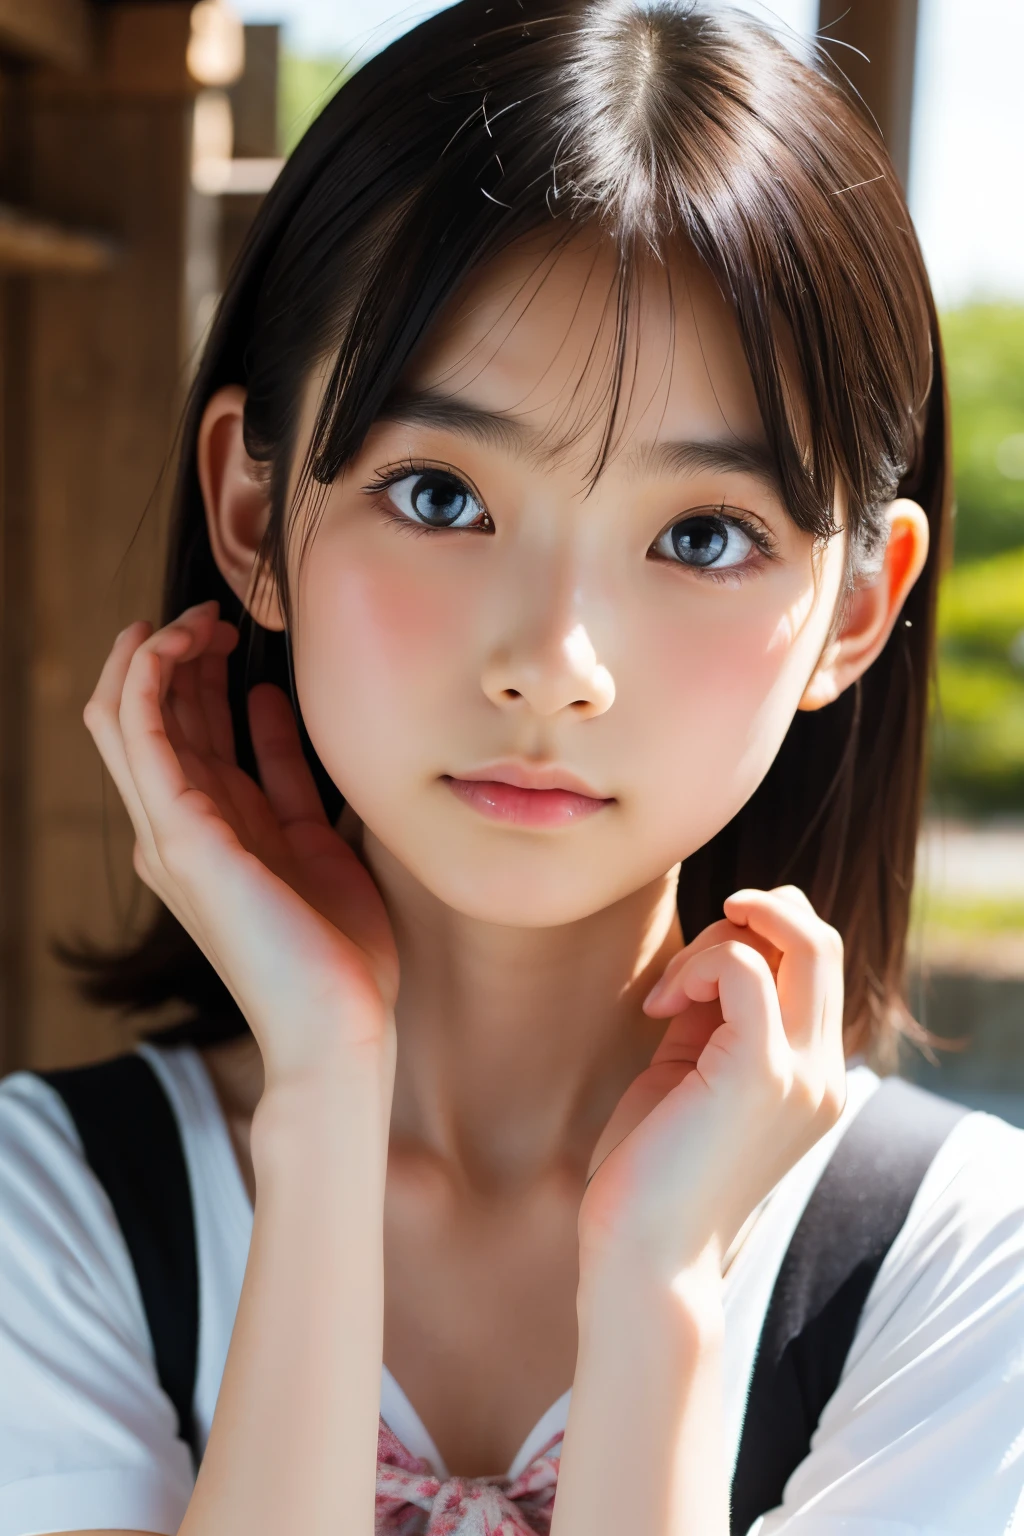 (Schöne 14-jährige Japanerin), niedliches Gesicht, (tief eingeschnittenes Gesicht:0.7), (Sommersprossen:0.6), Sanftes Licht,gesunde weiße Haut, schüchtern, Bob, (ernstes Gesicht), (leuchtende Augen), dünn